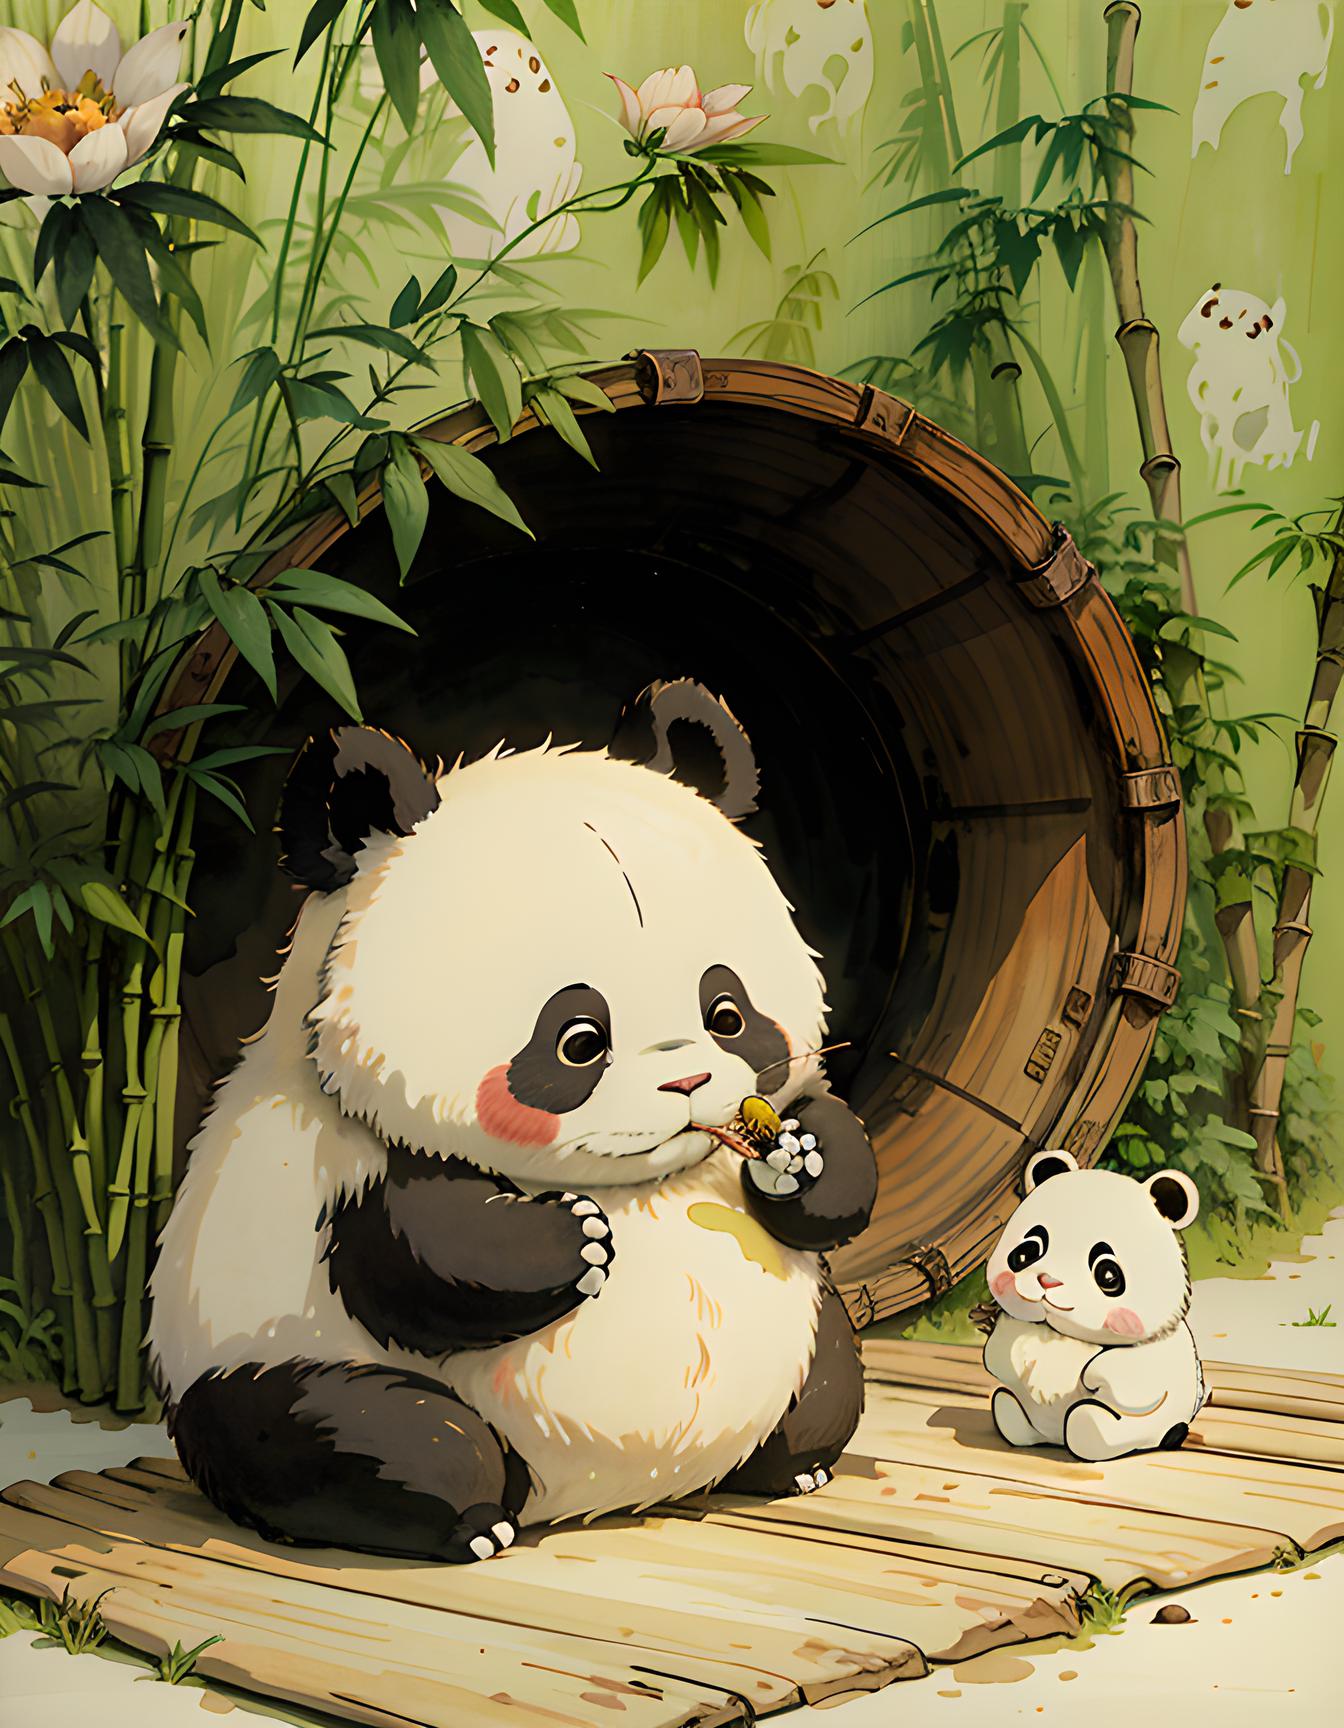 谁会不喜欢大熊猫呢